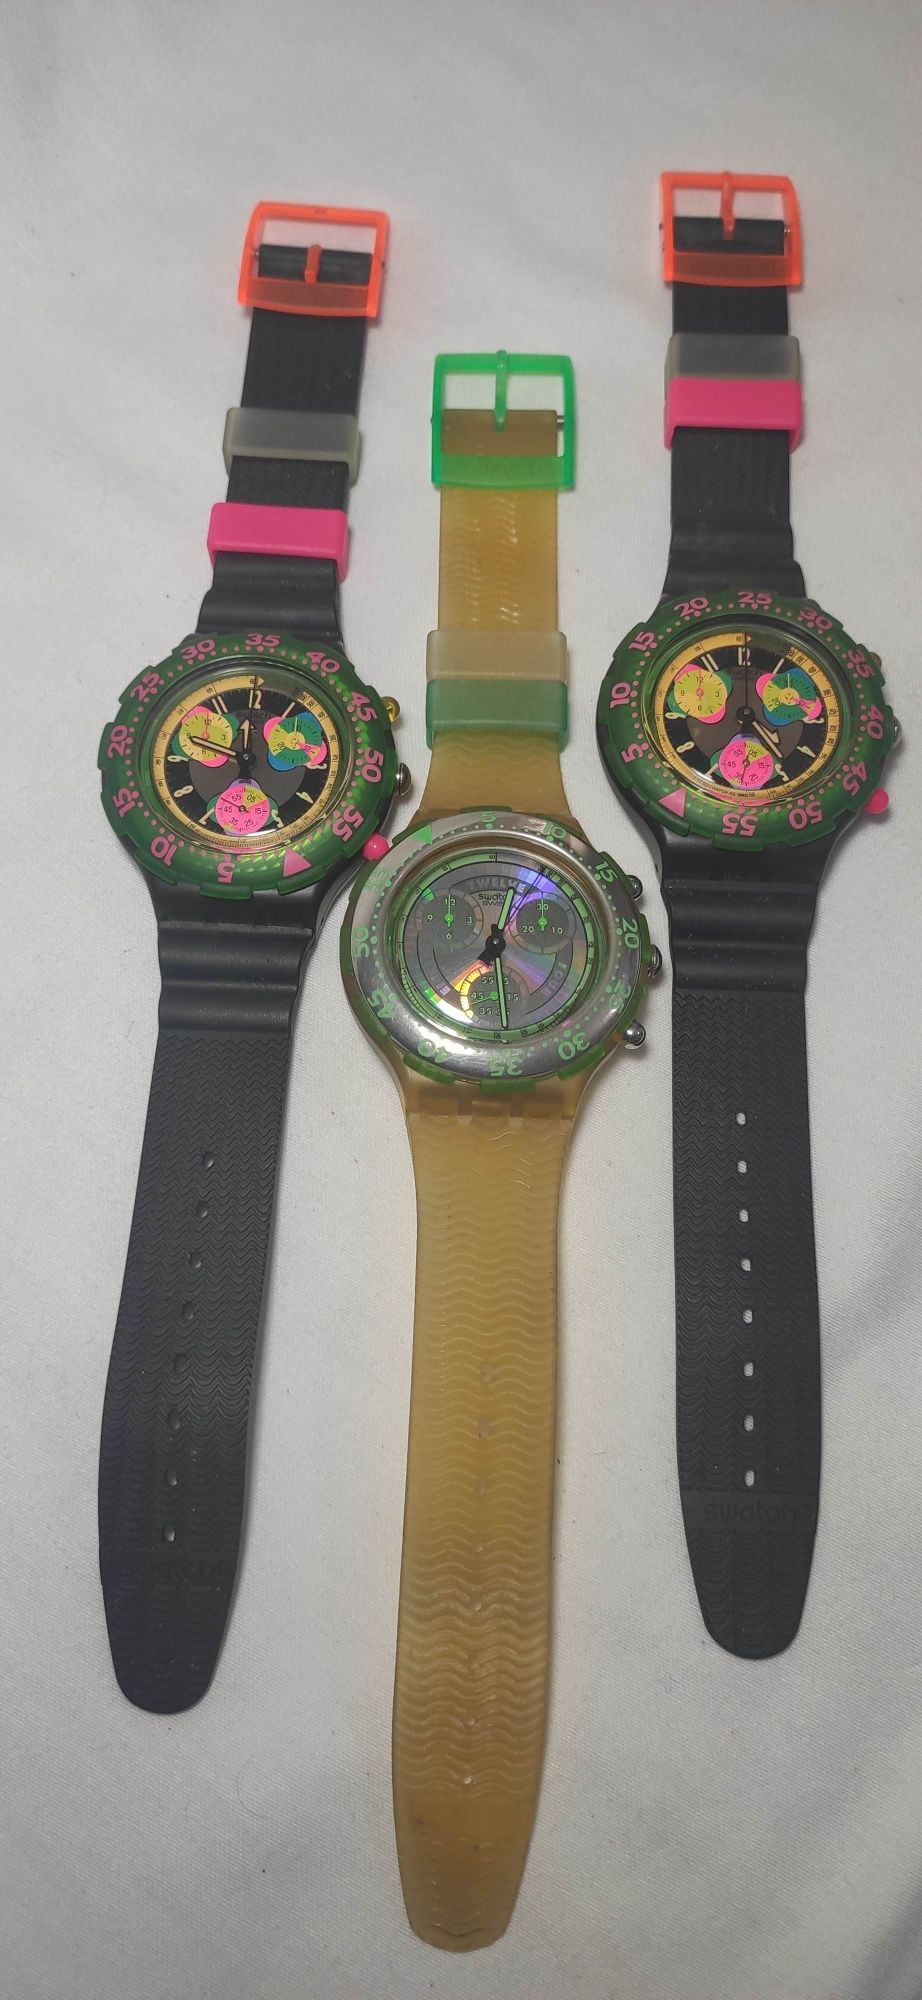 Relógios Swatch de colecção.